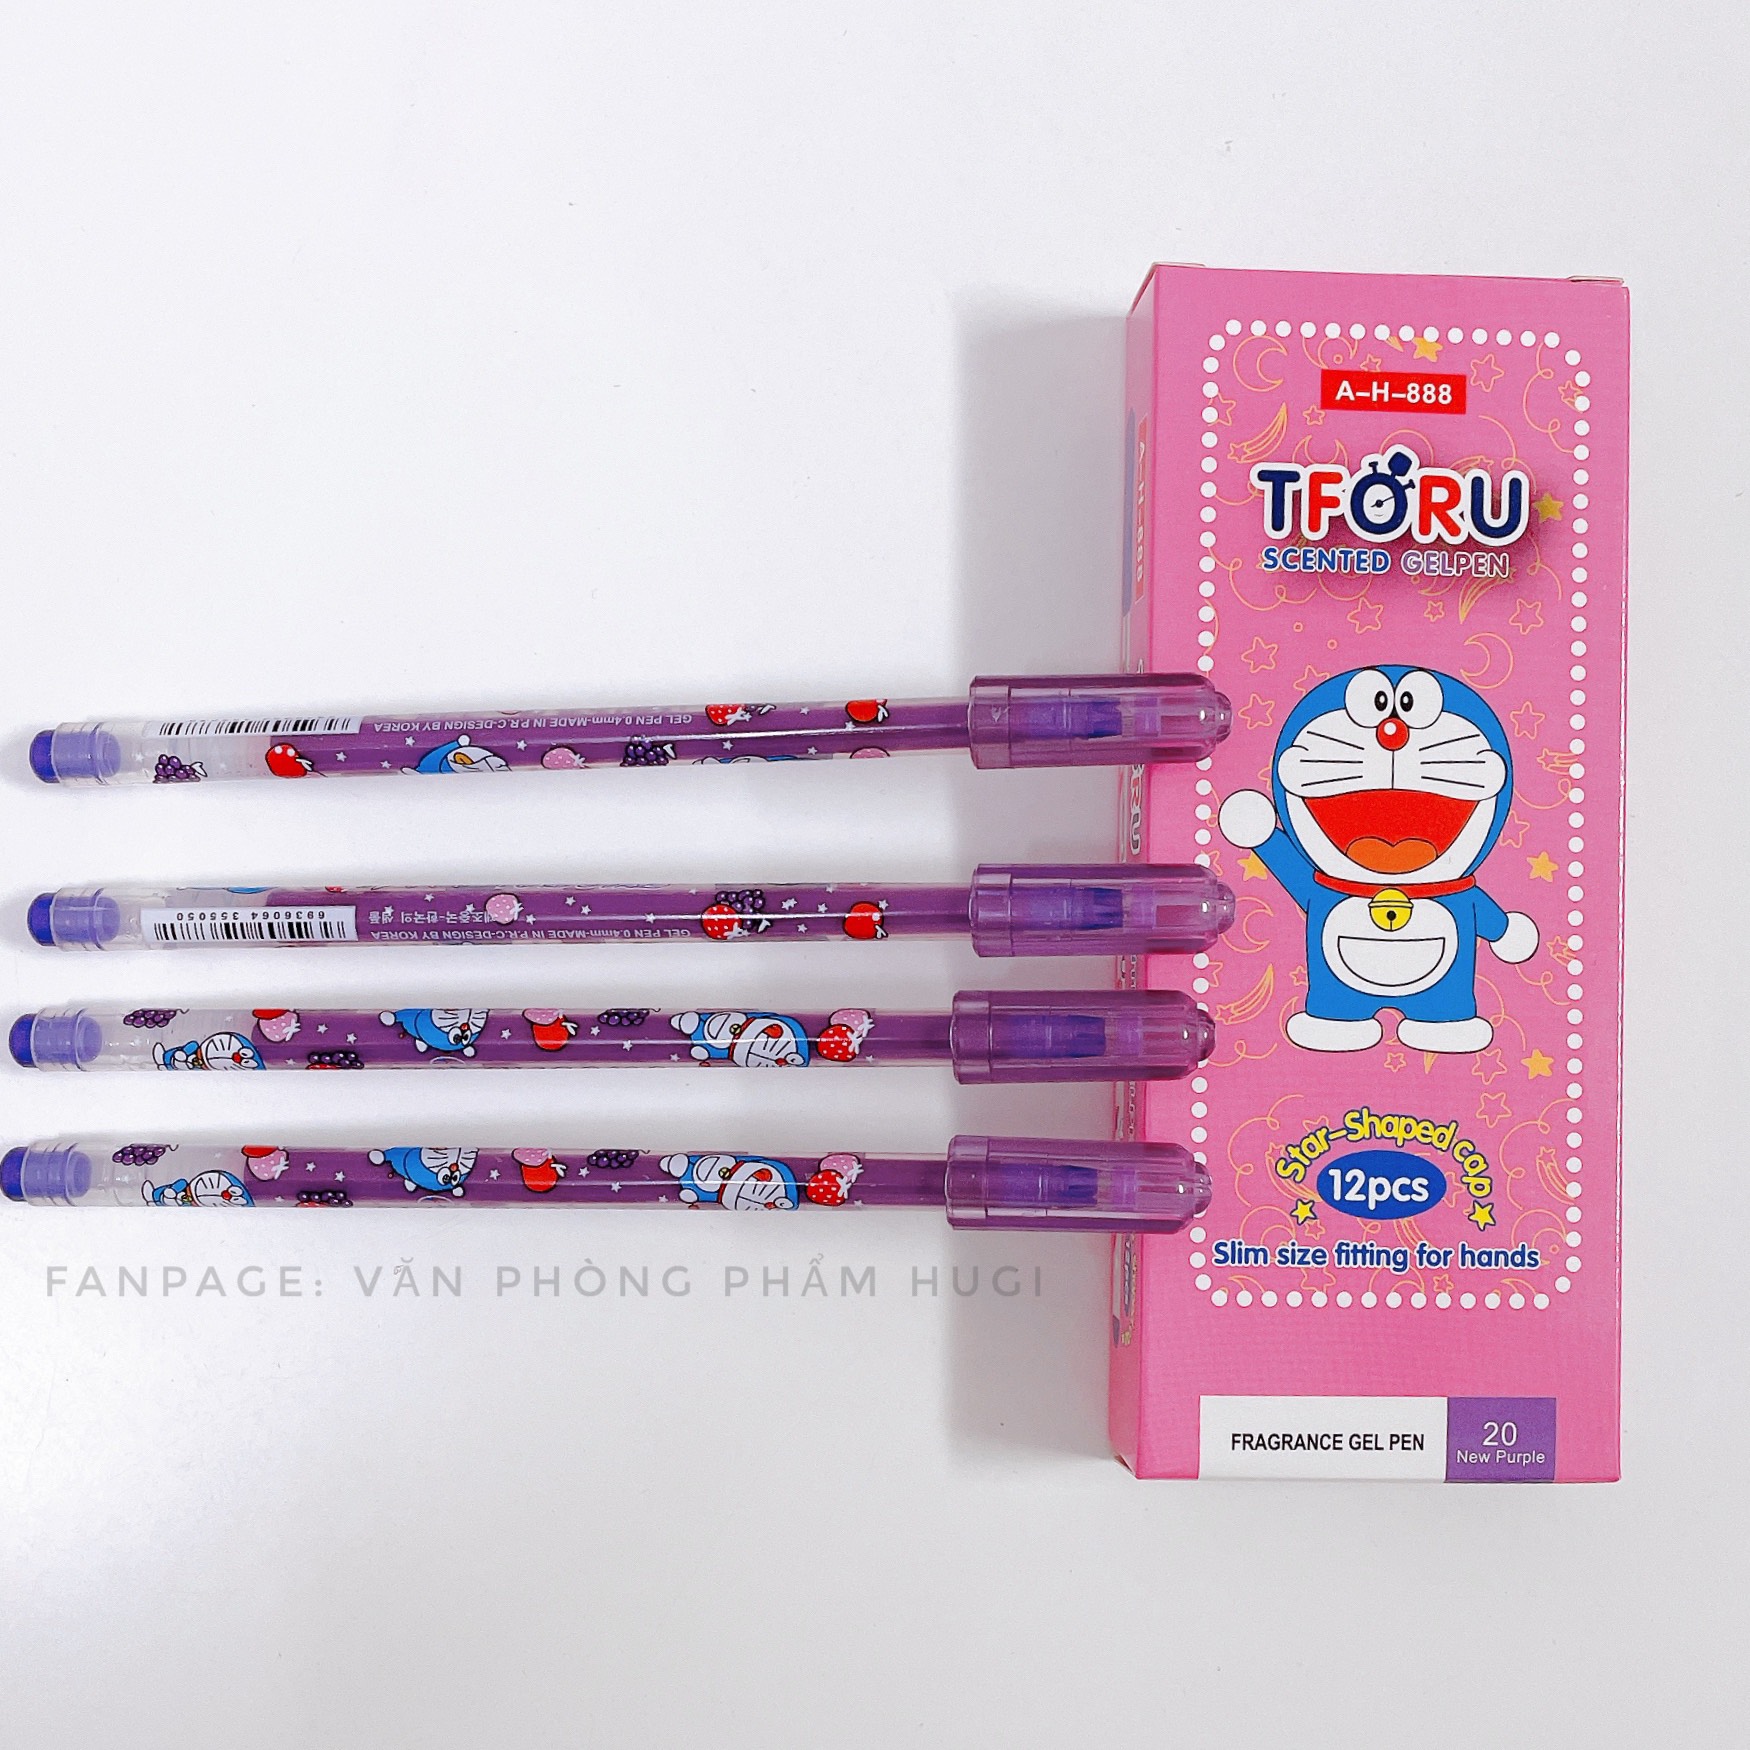 Hộp 12 Cây Bút Gel Nho TTORU chính hãng D.A P&T (Made in Korea) nét nhỏ mực đậm dành cho các bé tiểu học